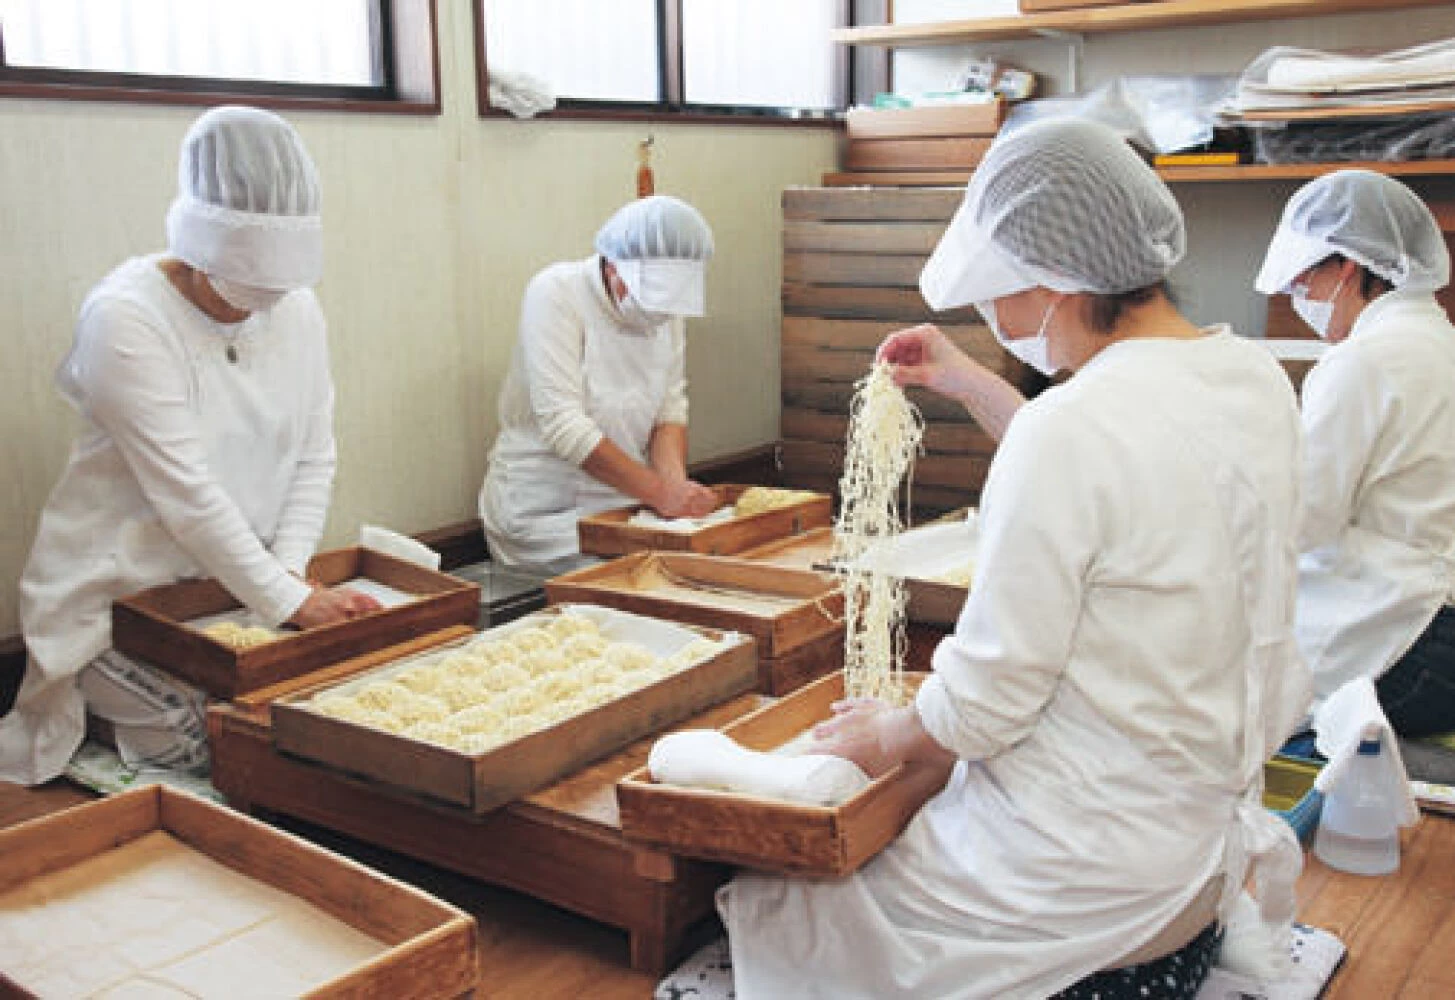 熟練の職人による低温熟成した手揉み麺